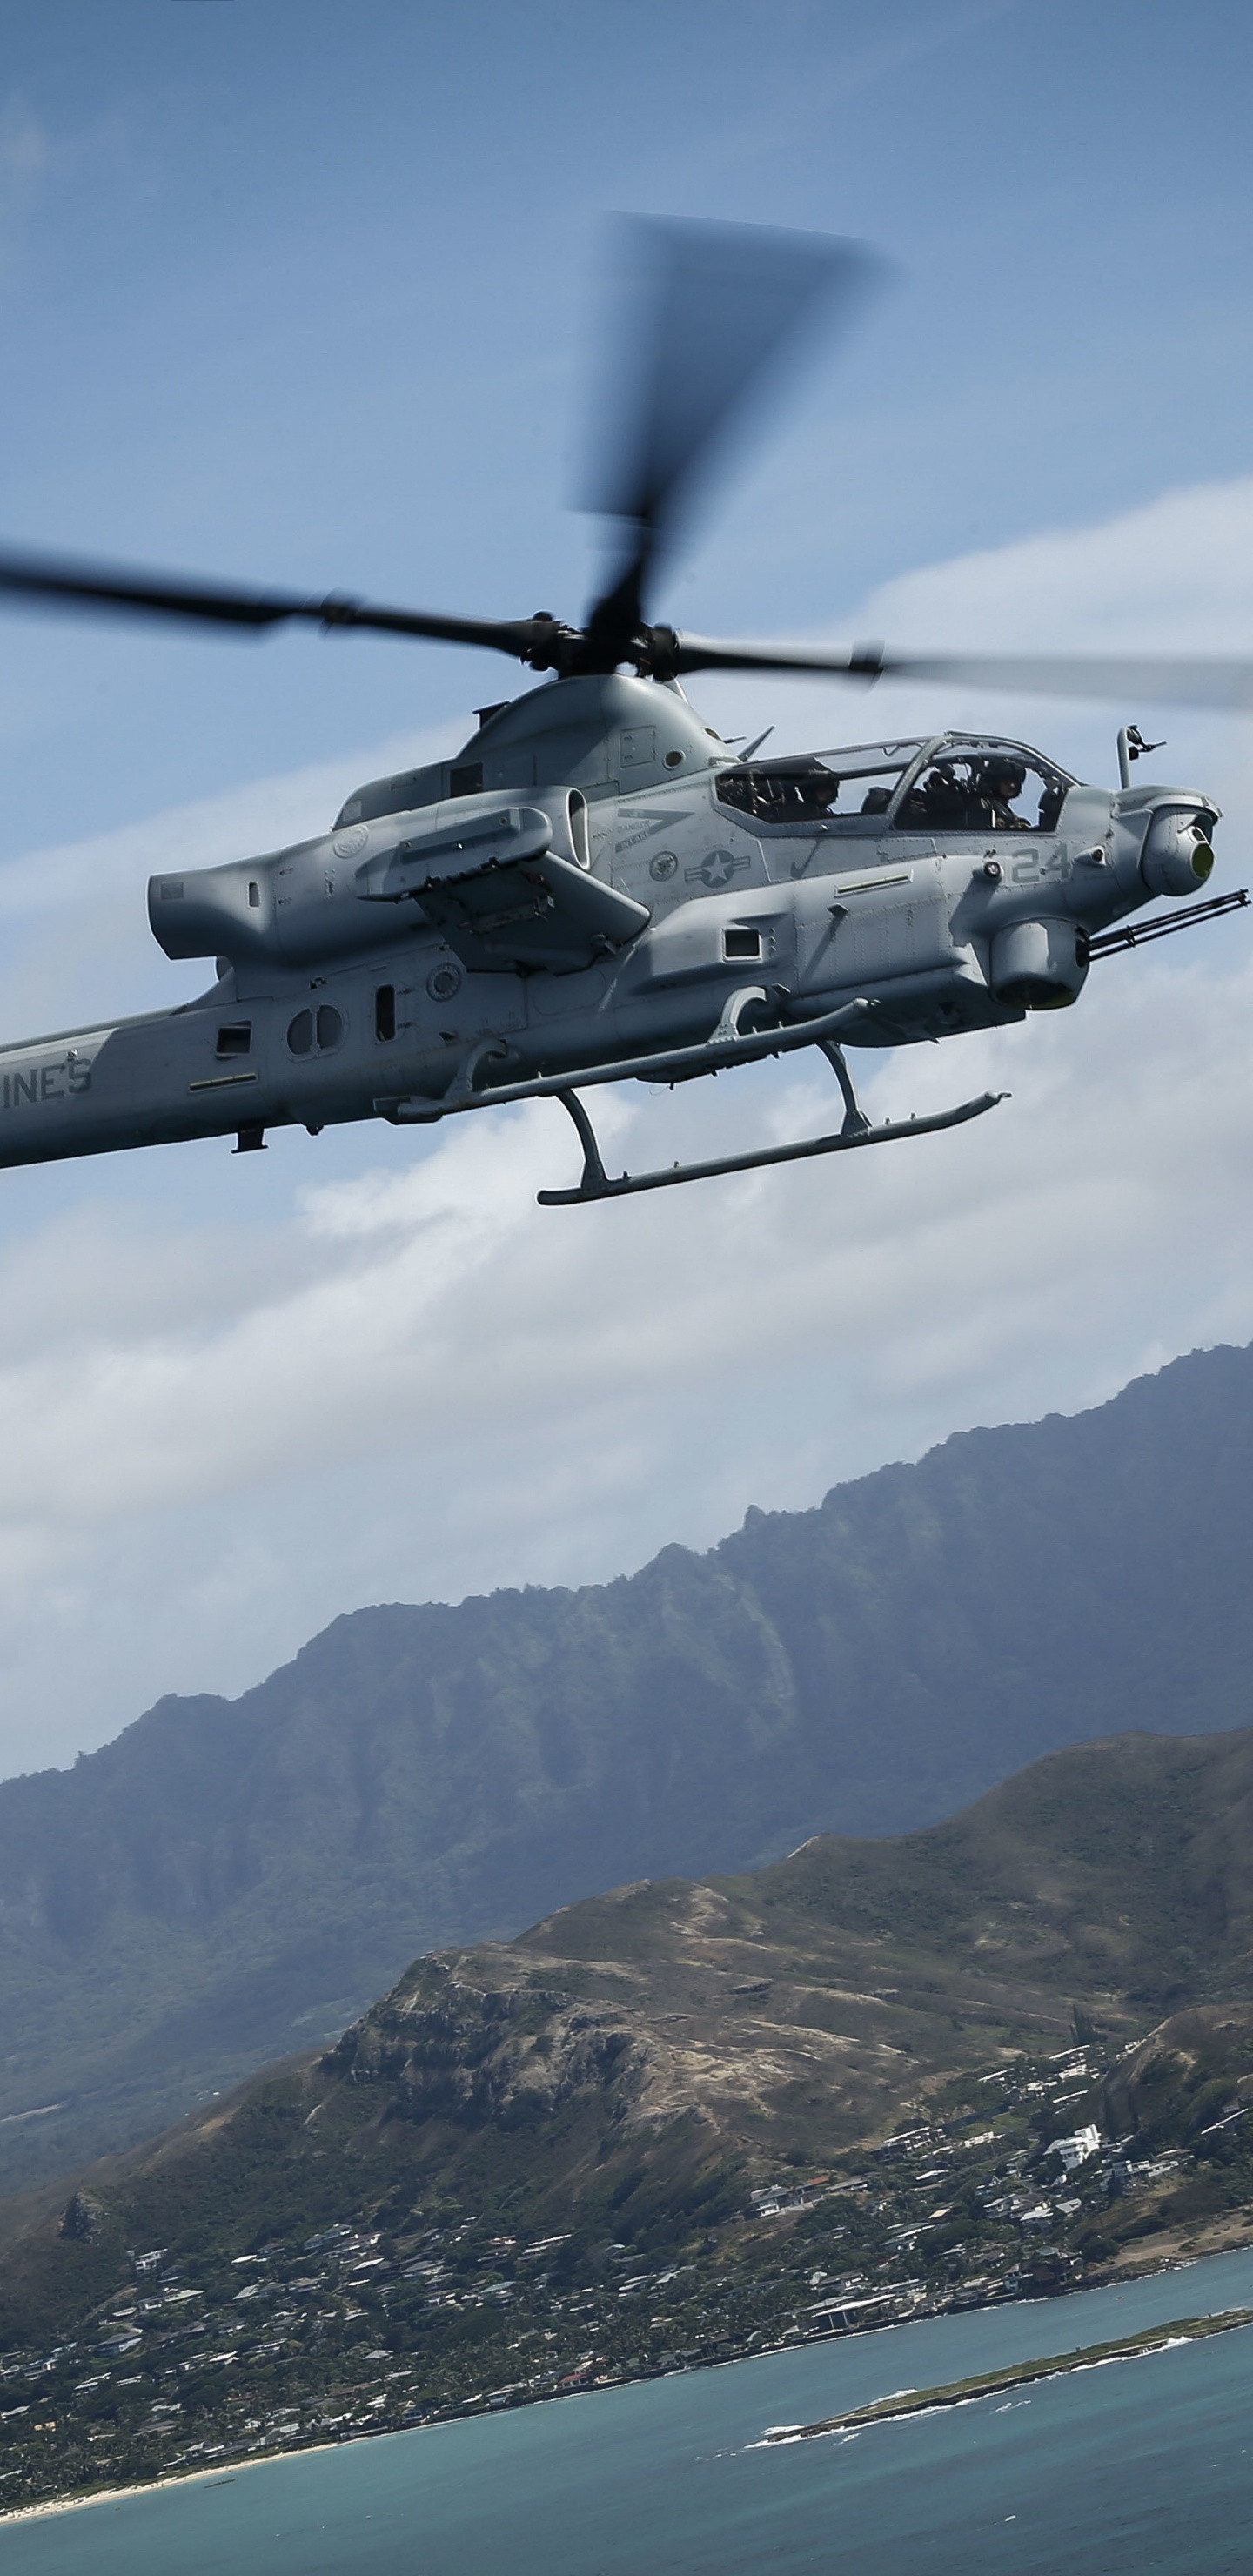 Helicóptero Blanco y Negro Sobrevolando la Montaña Durante el Día. Wallpaper in 1440x2960 Resolution